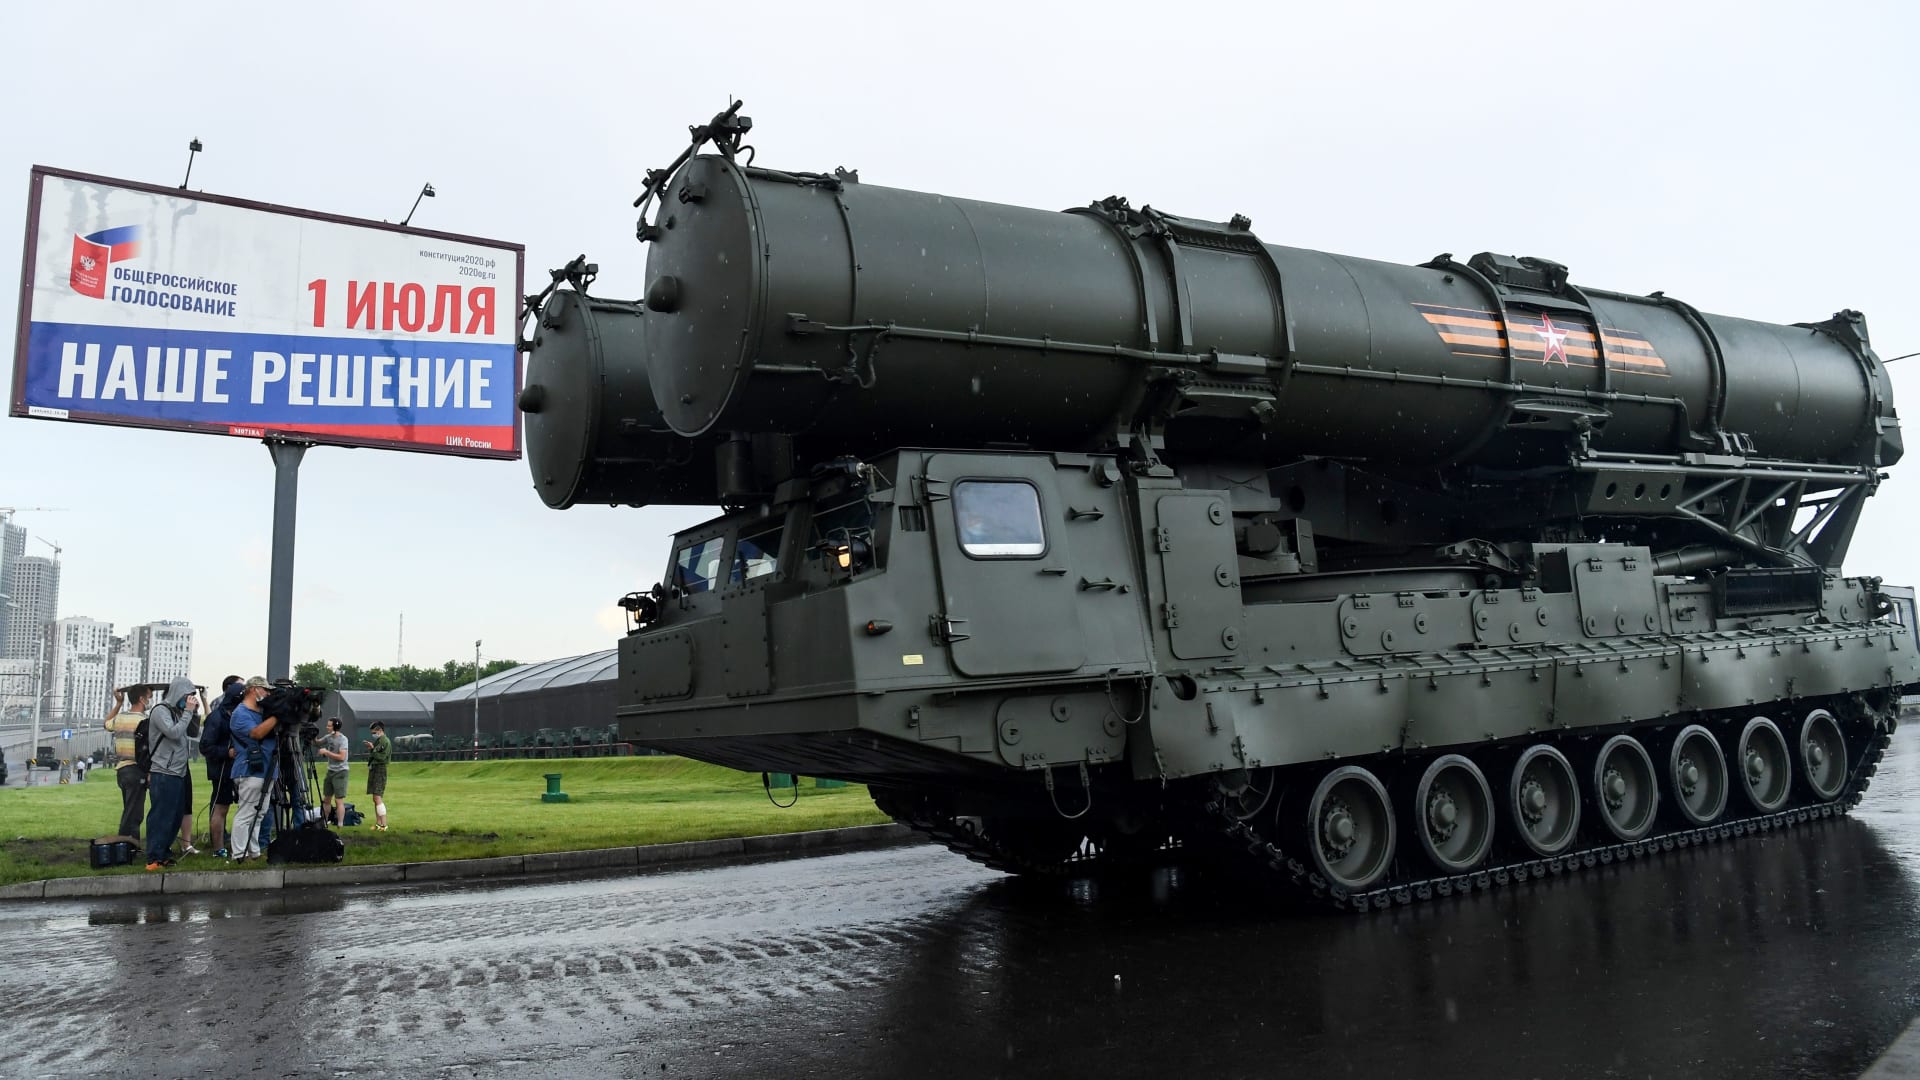 تركيا تتسلم الصواريخ الروسية "إس 400" رغم اعتراض واشنطن